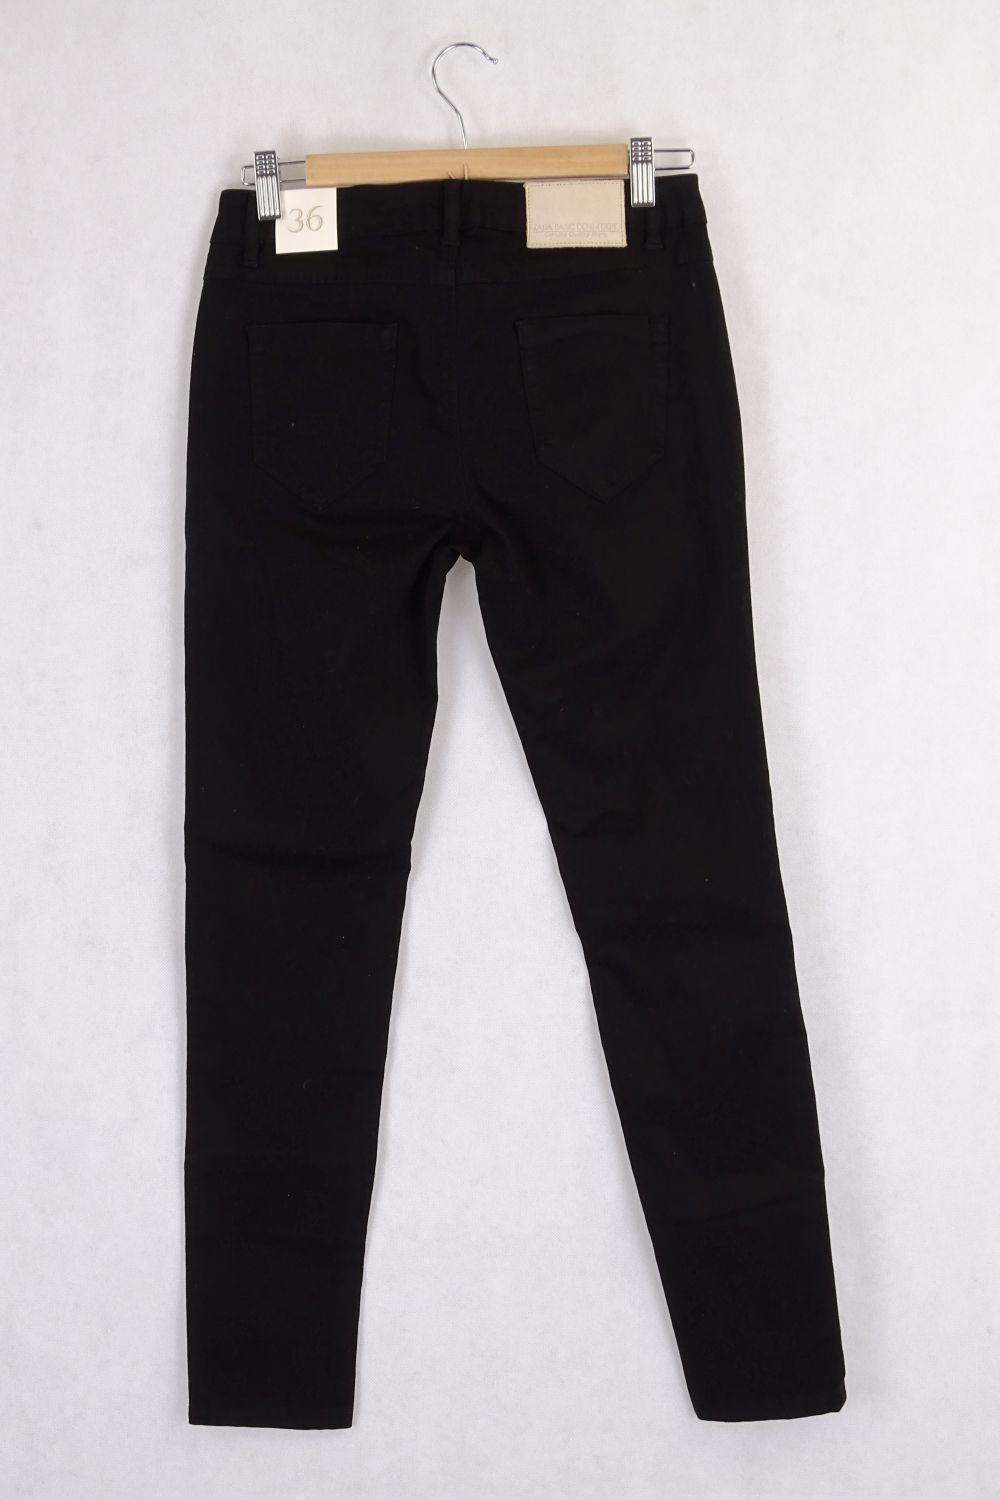 Black Zara Skinny Jeans 9